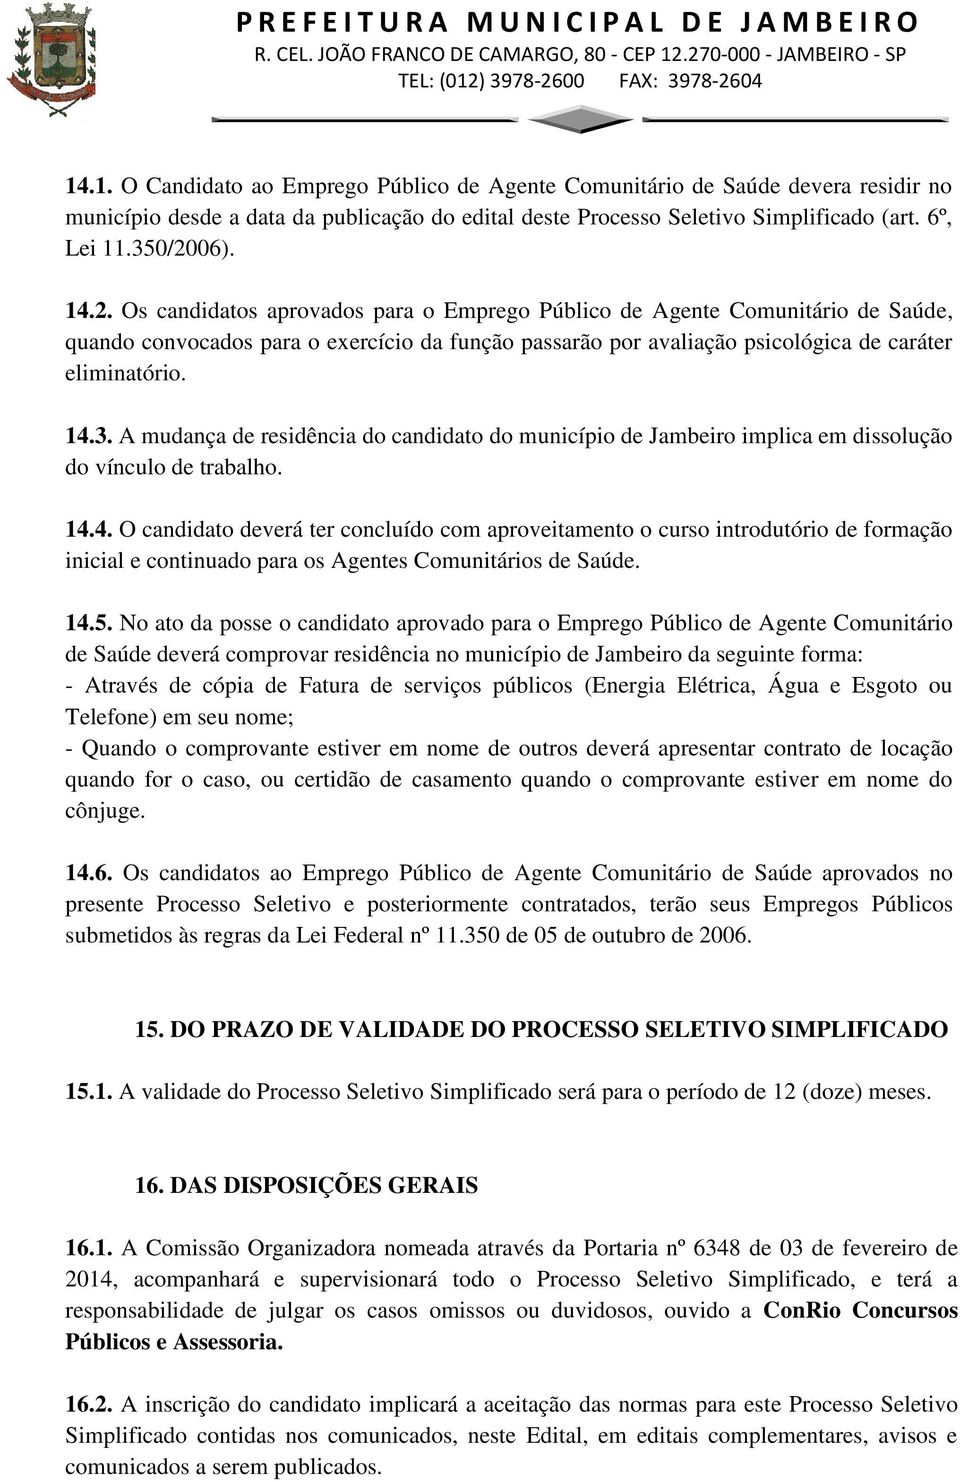 A mudança de residência do candidato do município de Jambeiro implica em dissolução do vínculo de trabalho. 14.